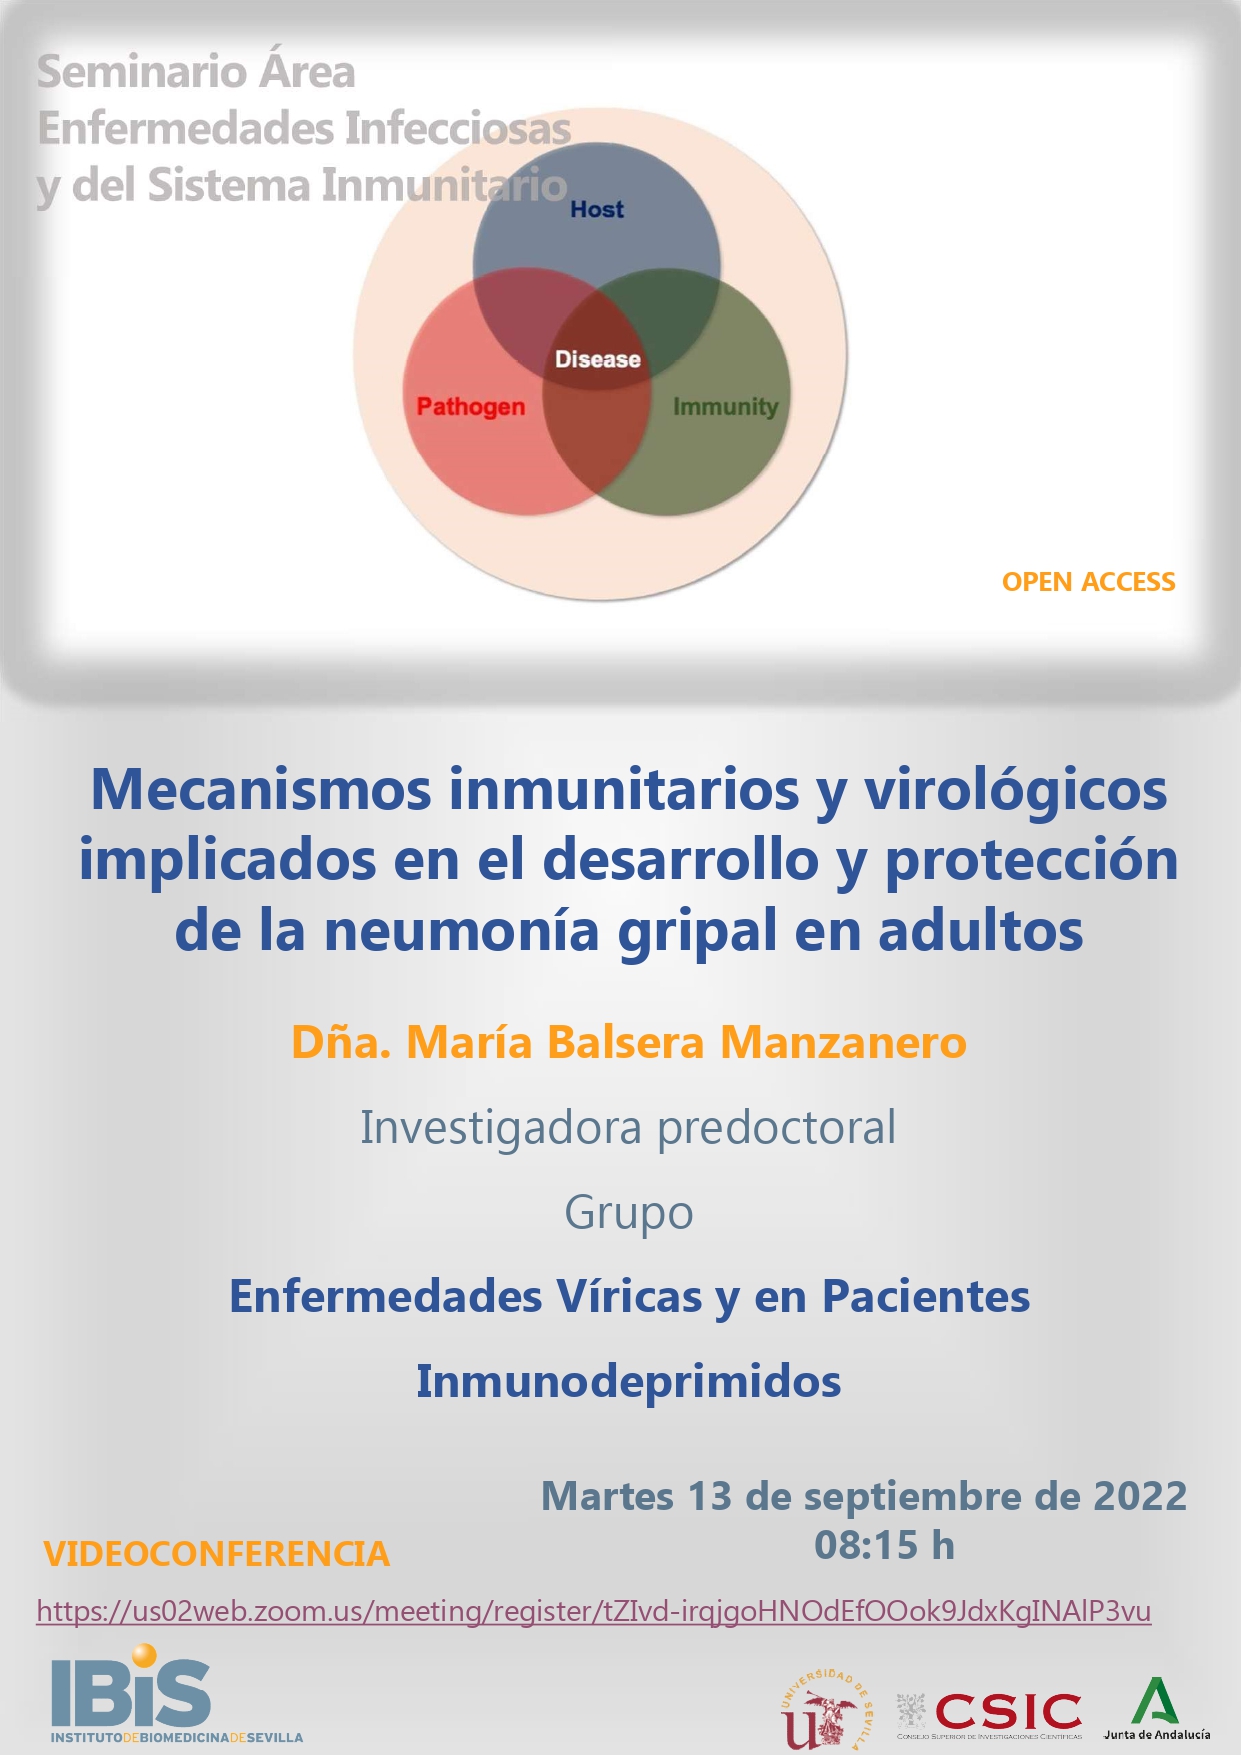 Poster: Mecanismos inmunitarios y virológicos implicados en el desarrollo y protección de la neumonía gripal en adultos